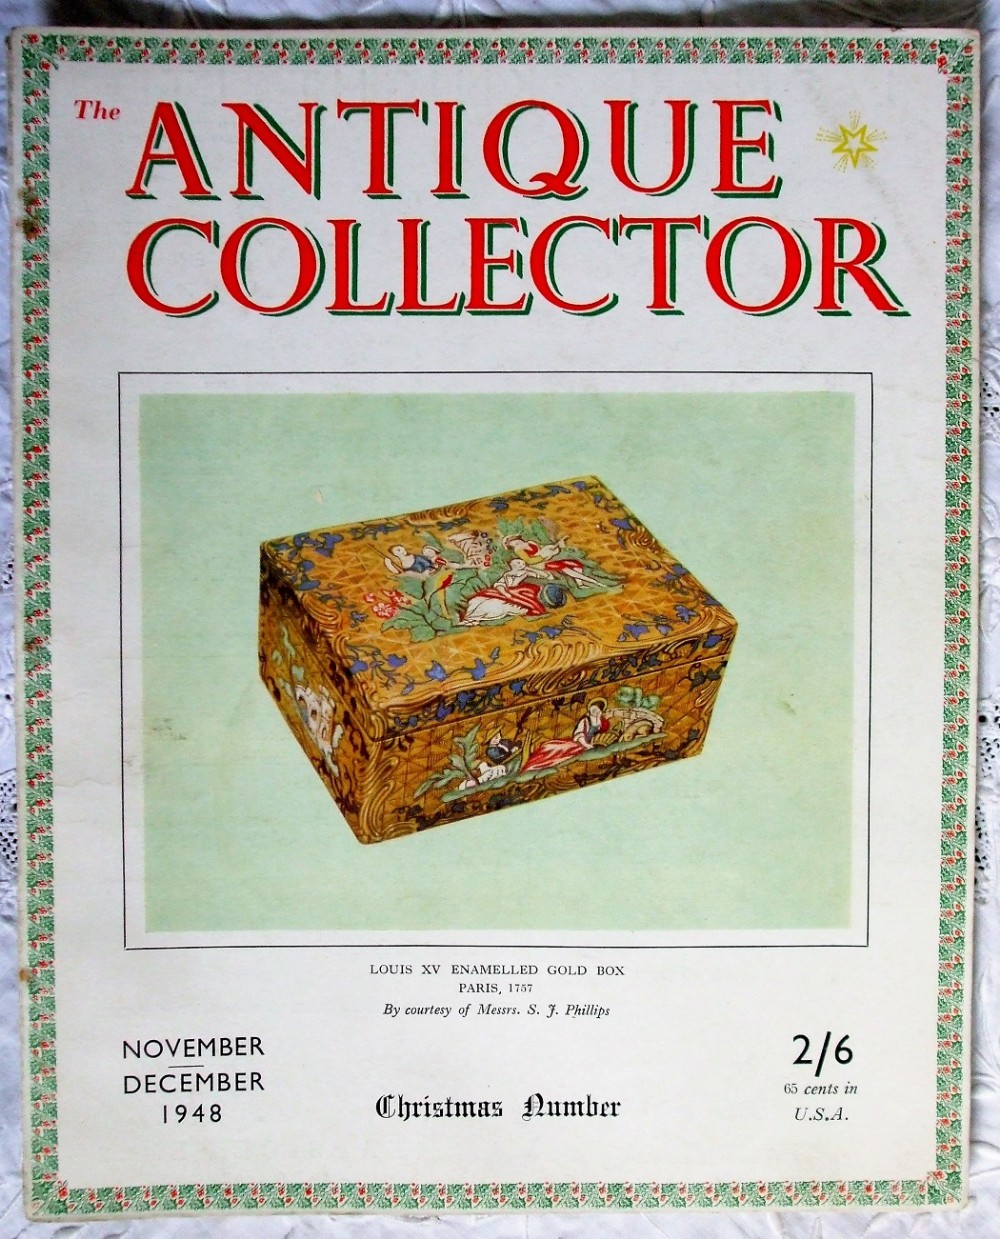 the antique collector vol 19 no 6 november december 1948